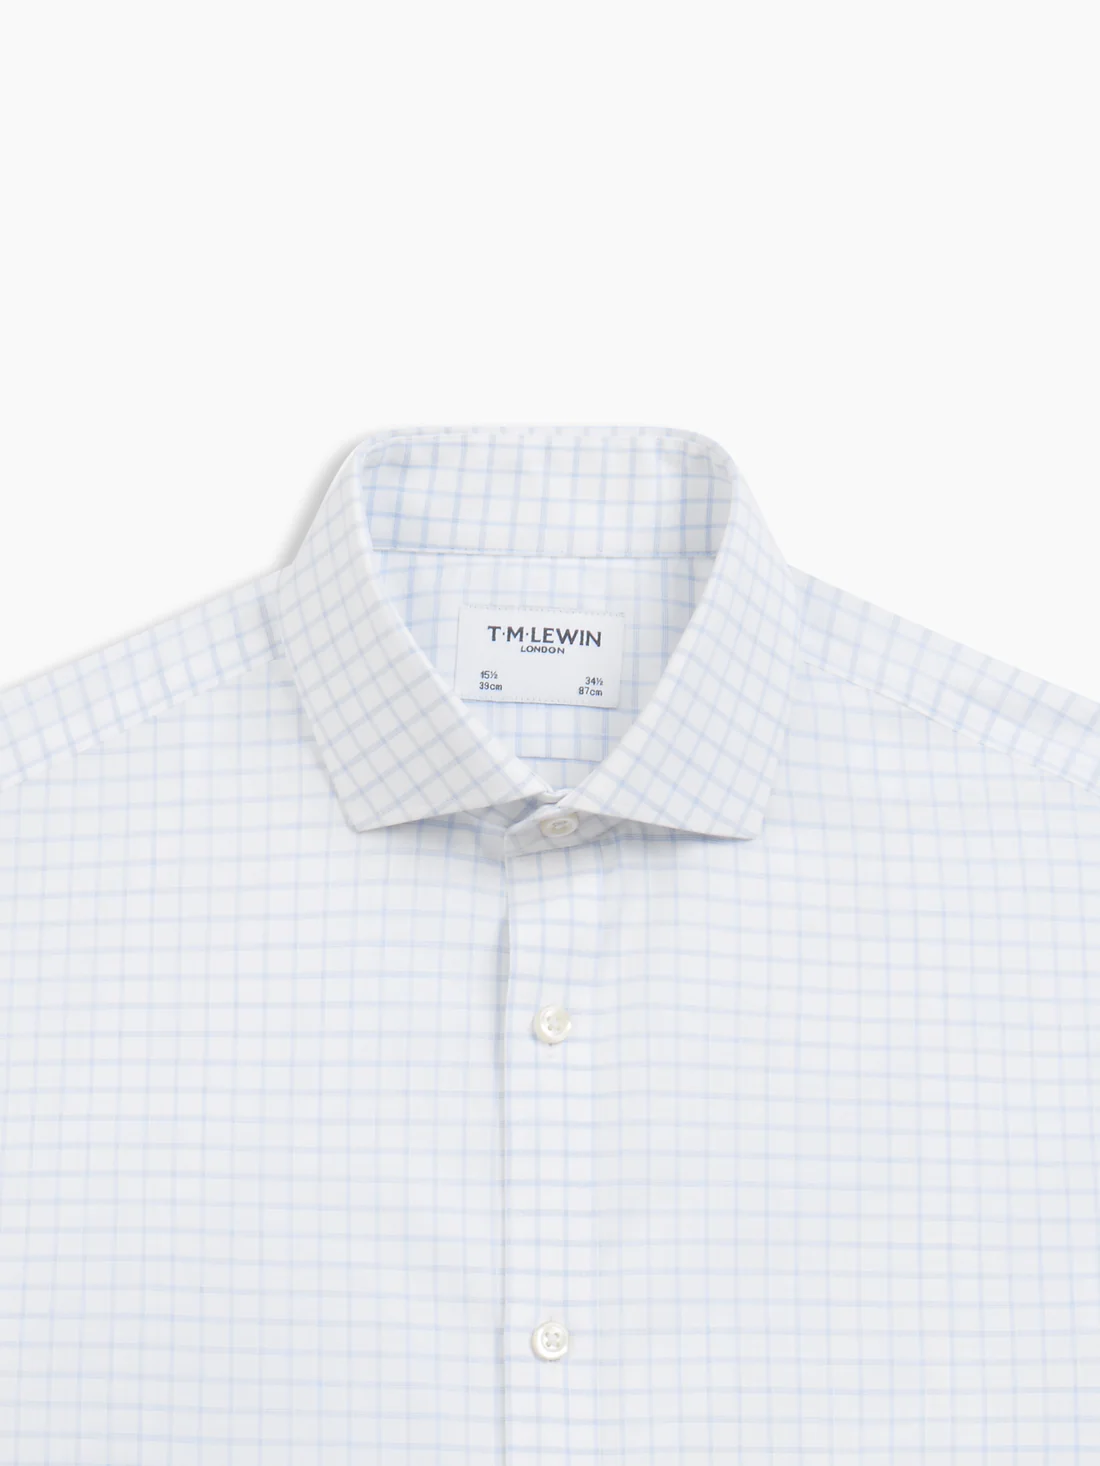 T.M.Lewin | Shop Online Men’s Shirts, Suits & Accessories